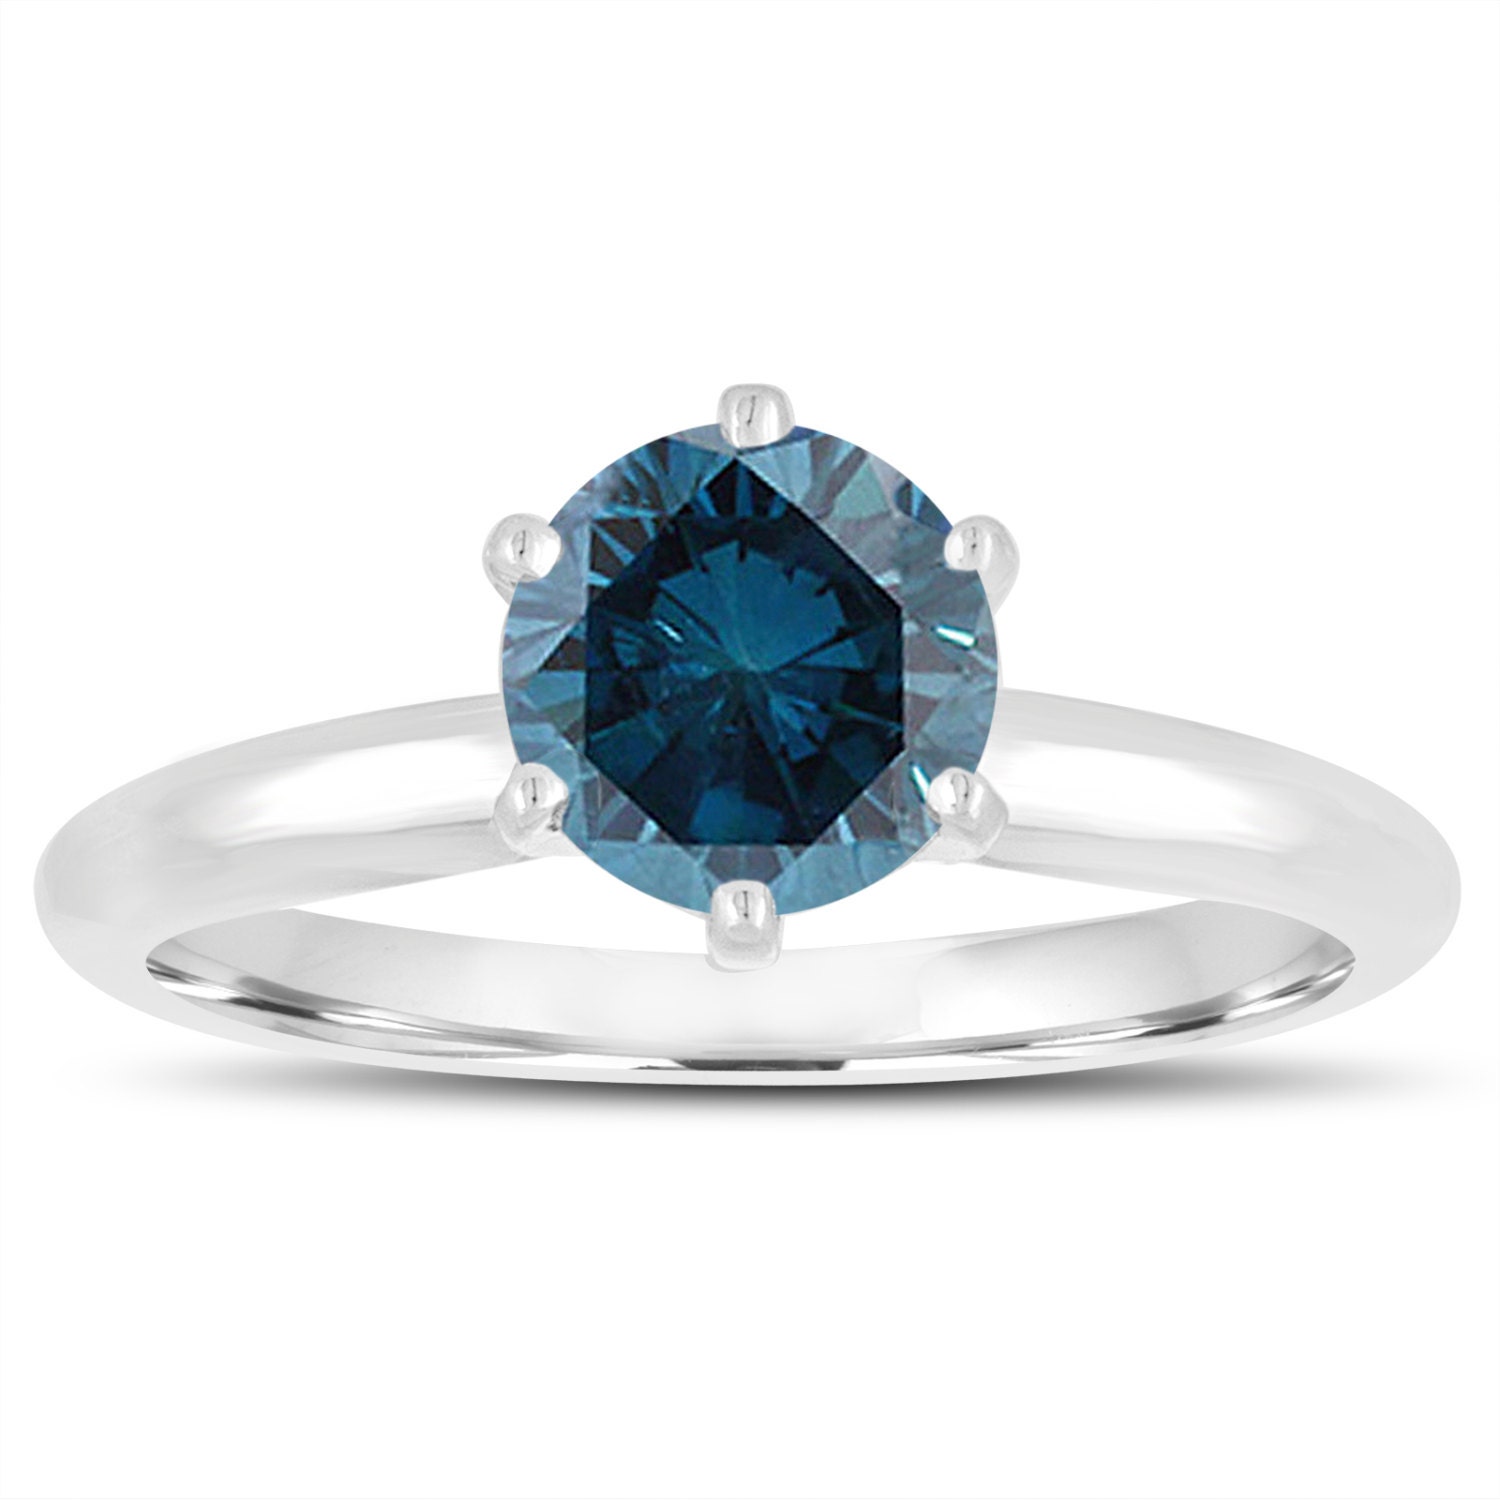 1.00 Carat Fancy Blue Diamond Solitaire Engagement Ring 14K